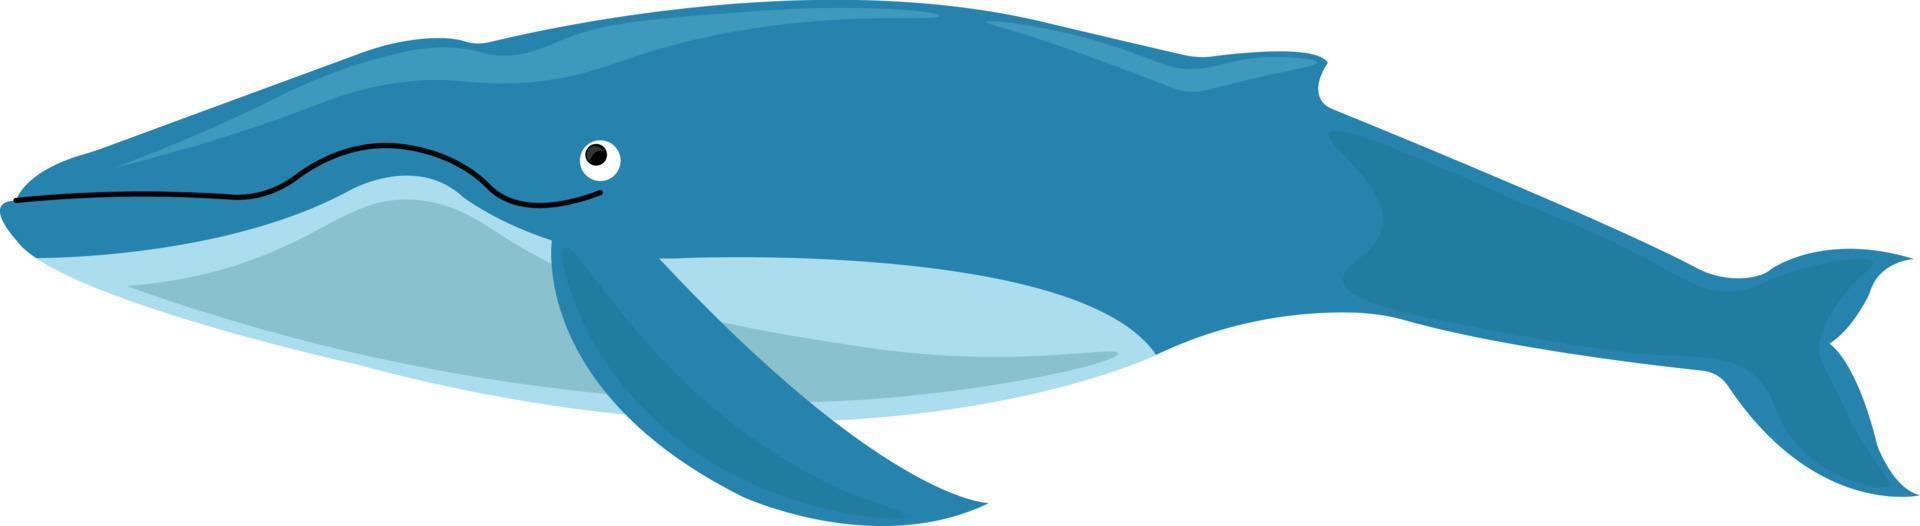 Blauwal, Illustration, Vektor auf weißem Hintergrund.